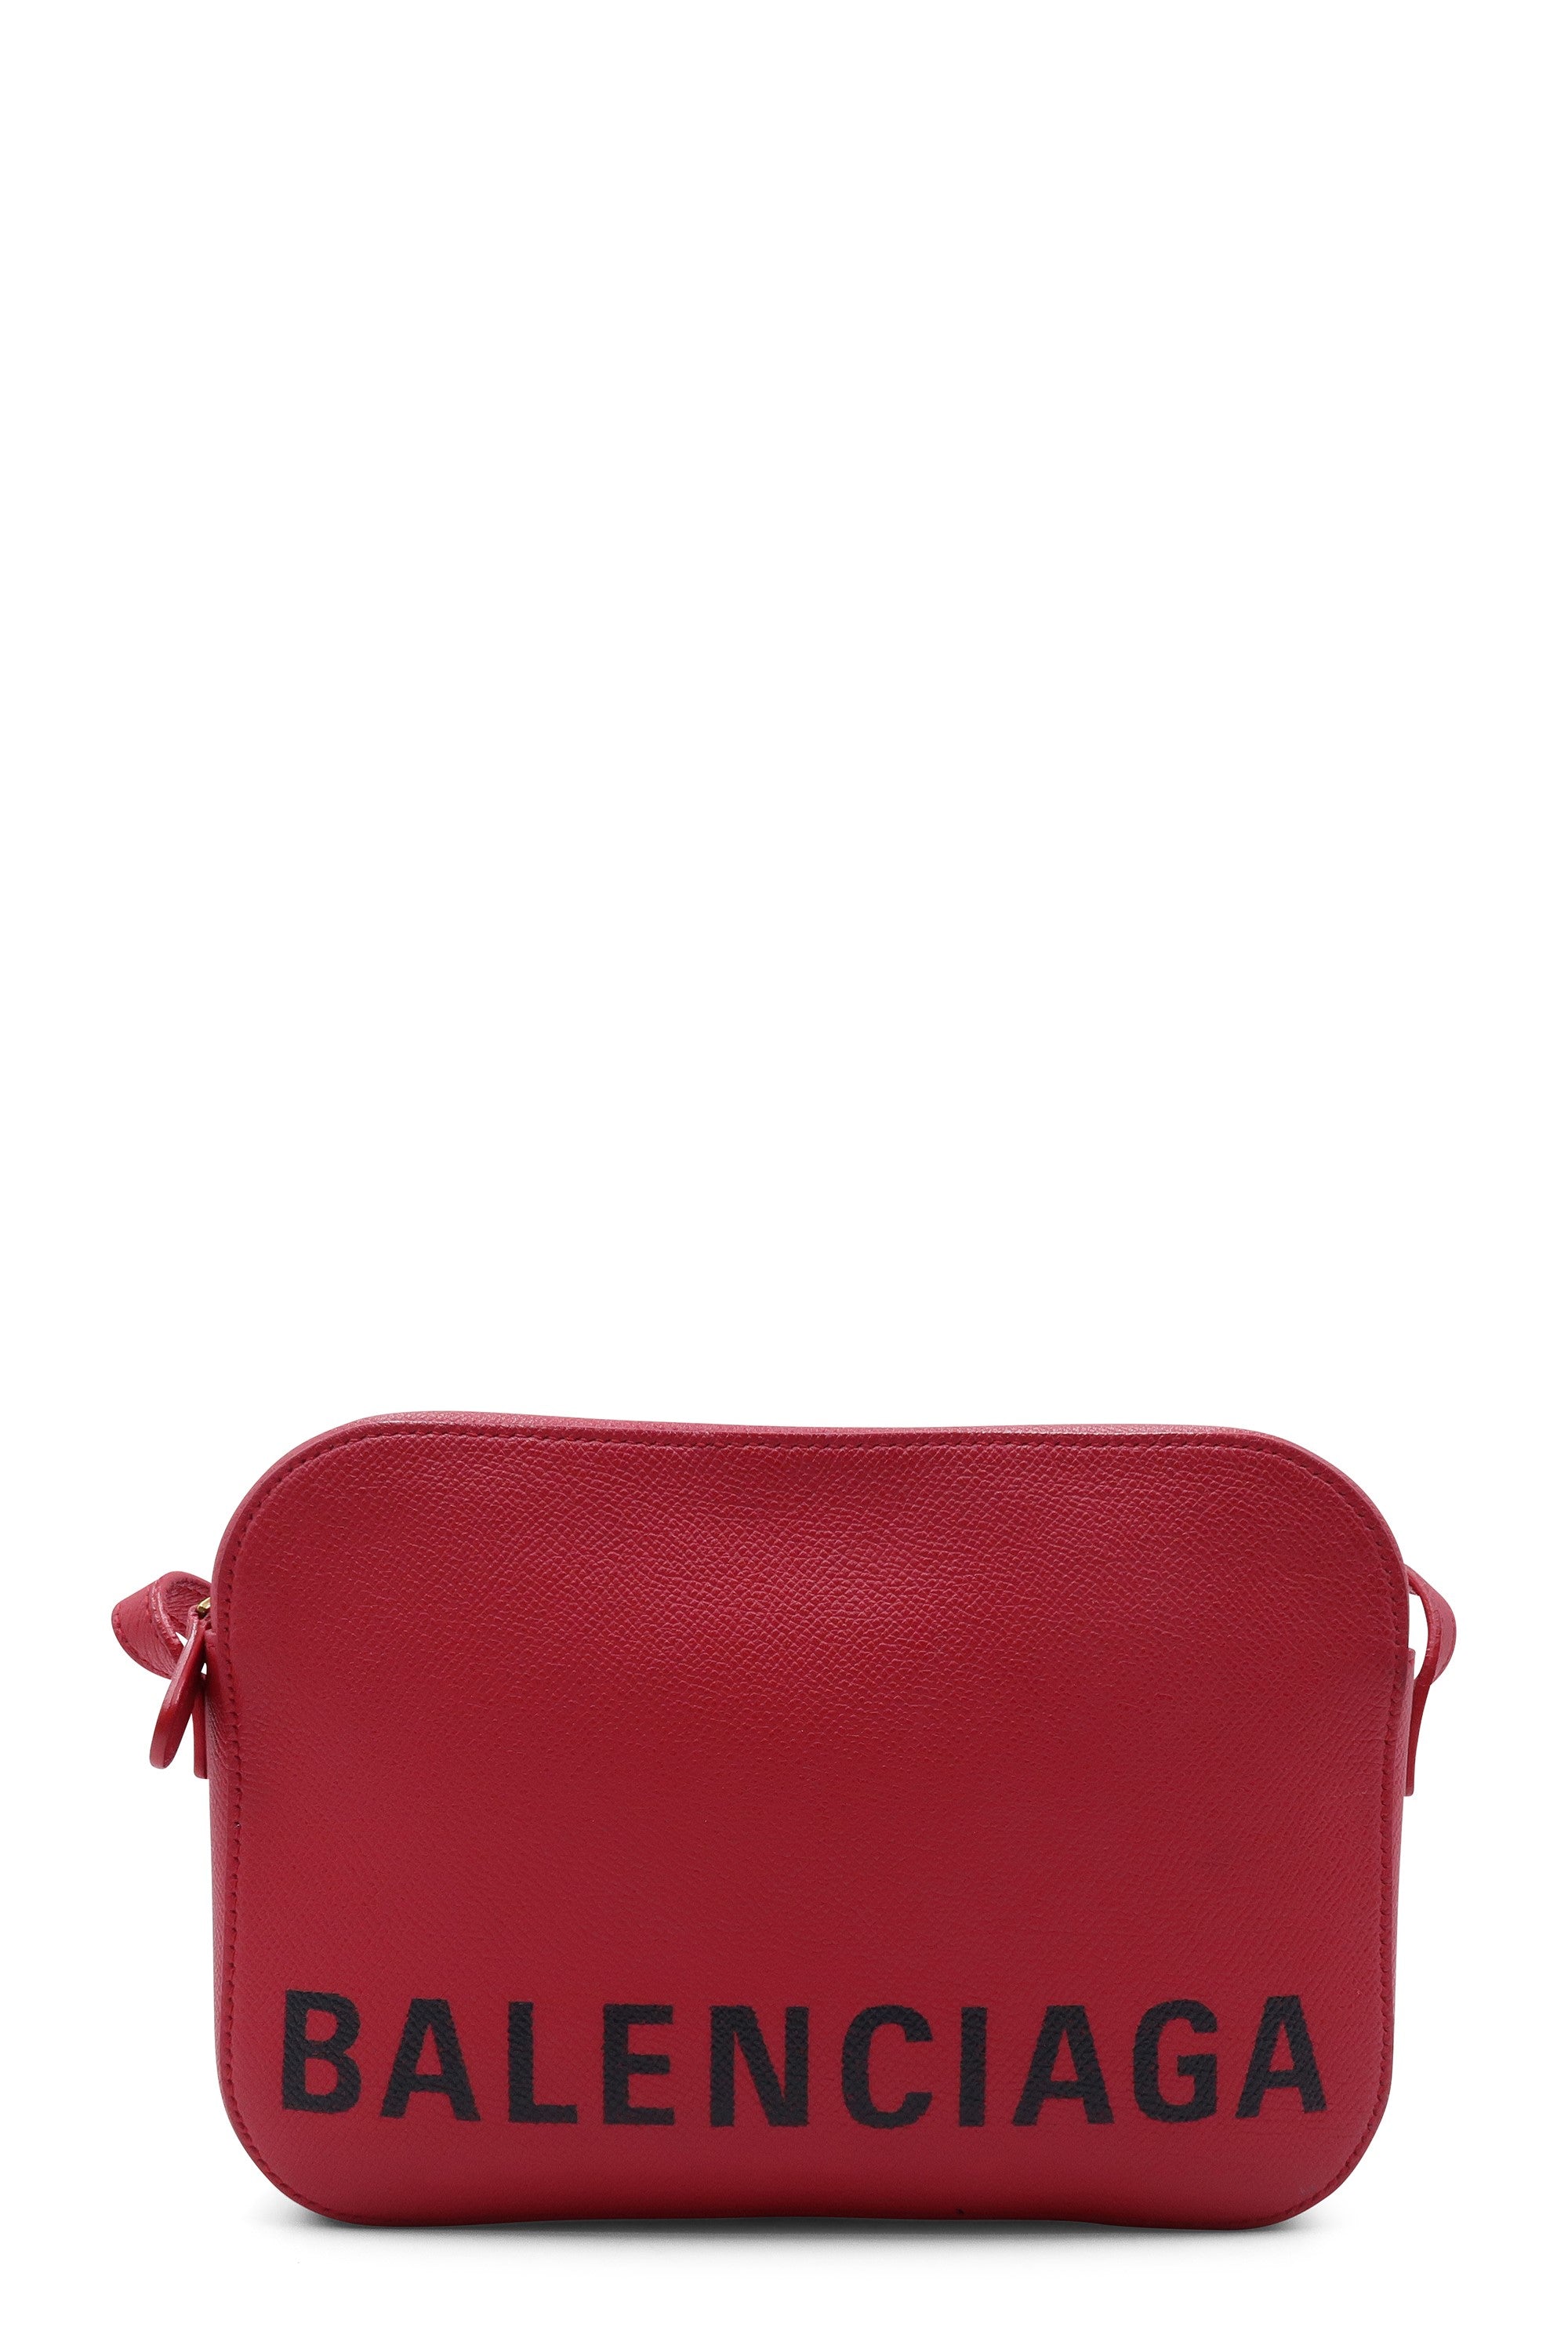 Balenciaga Red Handbags | ShopStyle